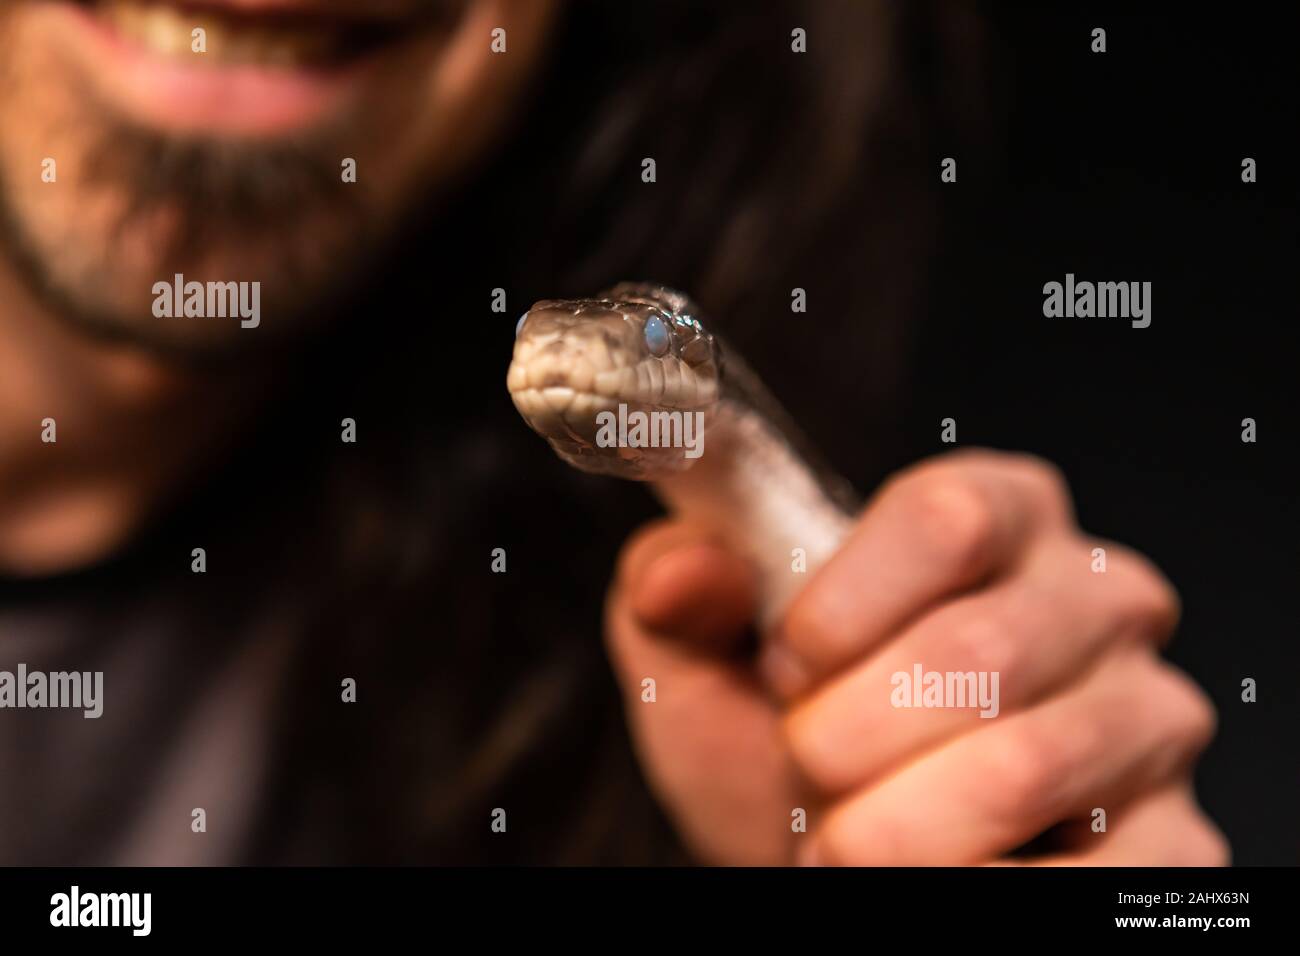 Pet rat snake se celebraron en el mans mano en studio, fuera de foco propietario con fondo negro material enfoque selectivo profundidad de campo Foto de stock